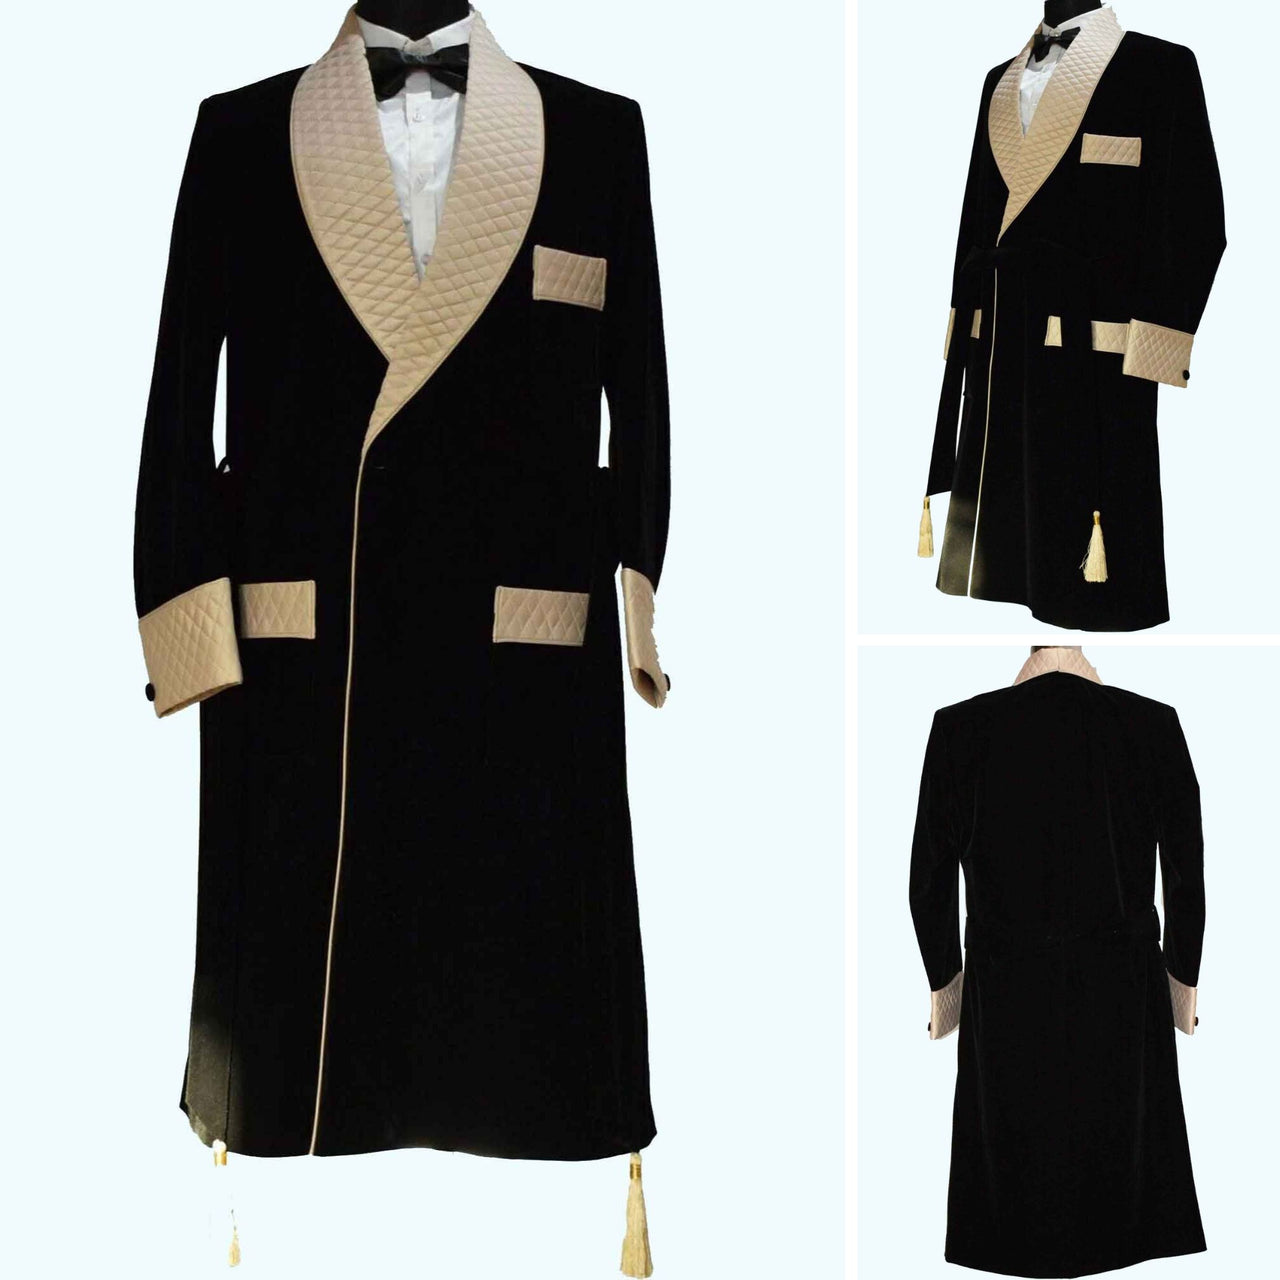 Men's Velvet Smoking Quilted Long Dinner Coat, Men's Velvet Long Smoking Coat, Smoking jackets